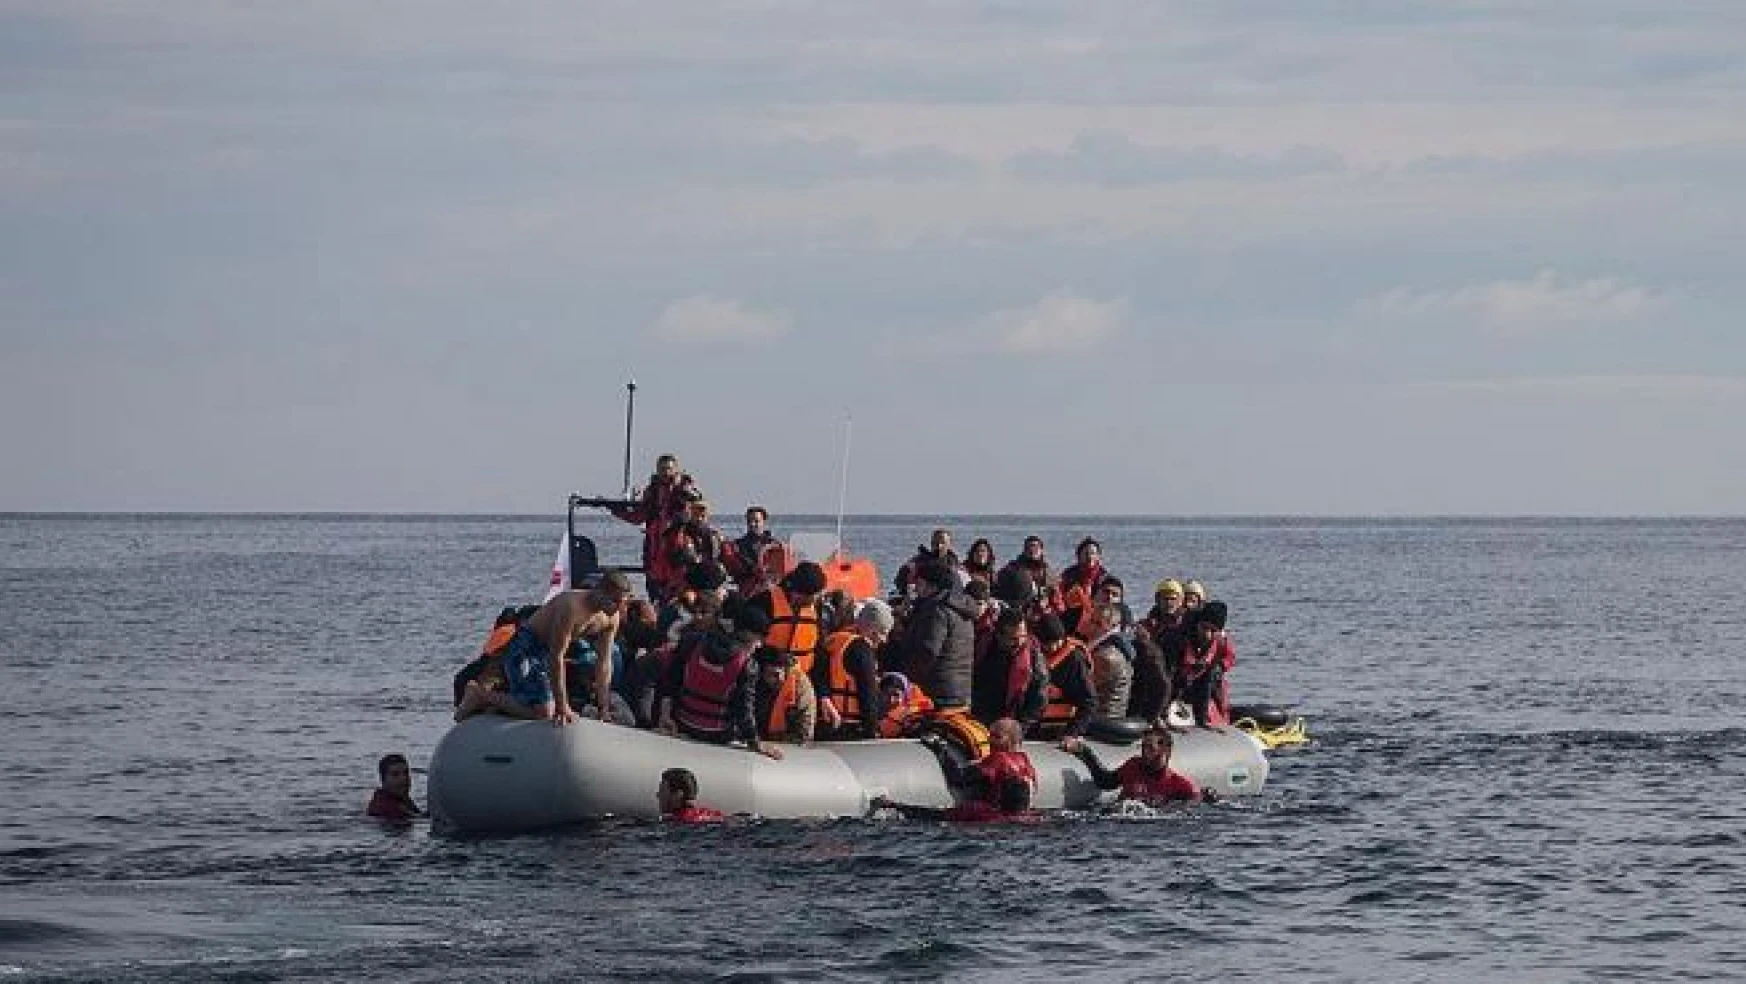 Ege Denizi'nde sığınmacı botu battı, 3 çocuk öldü